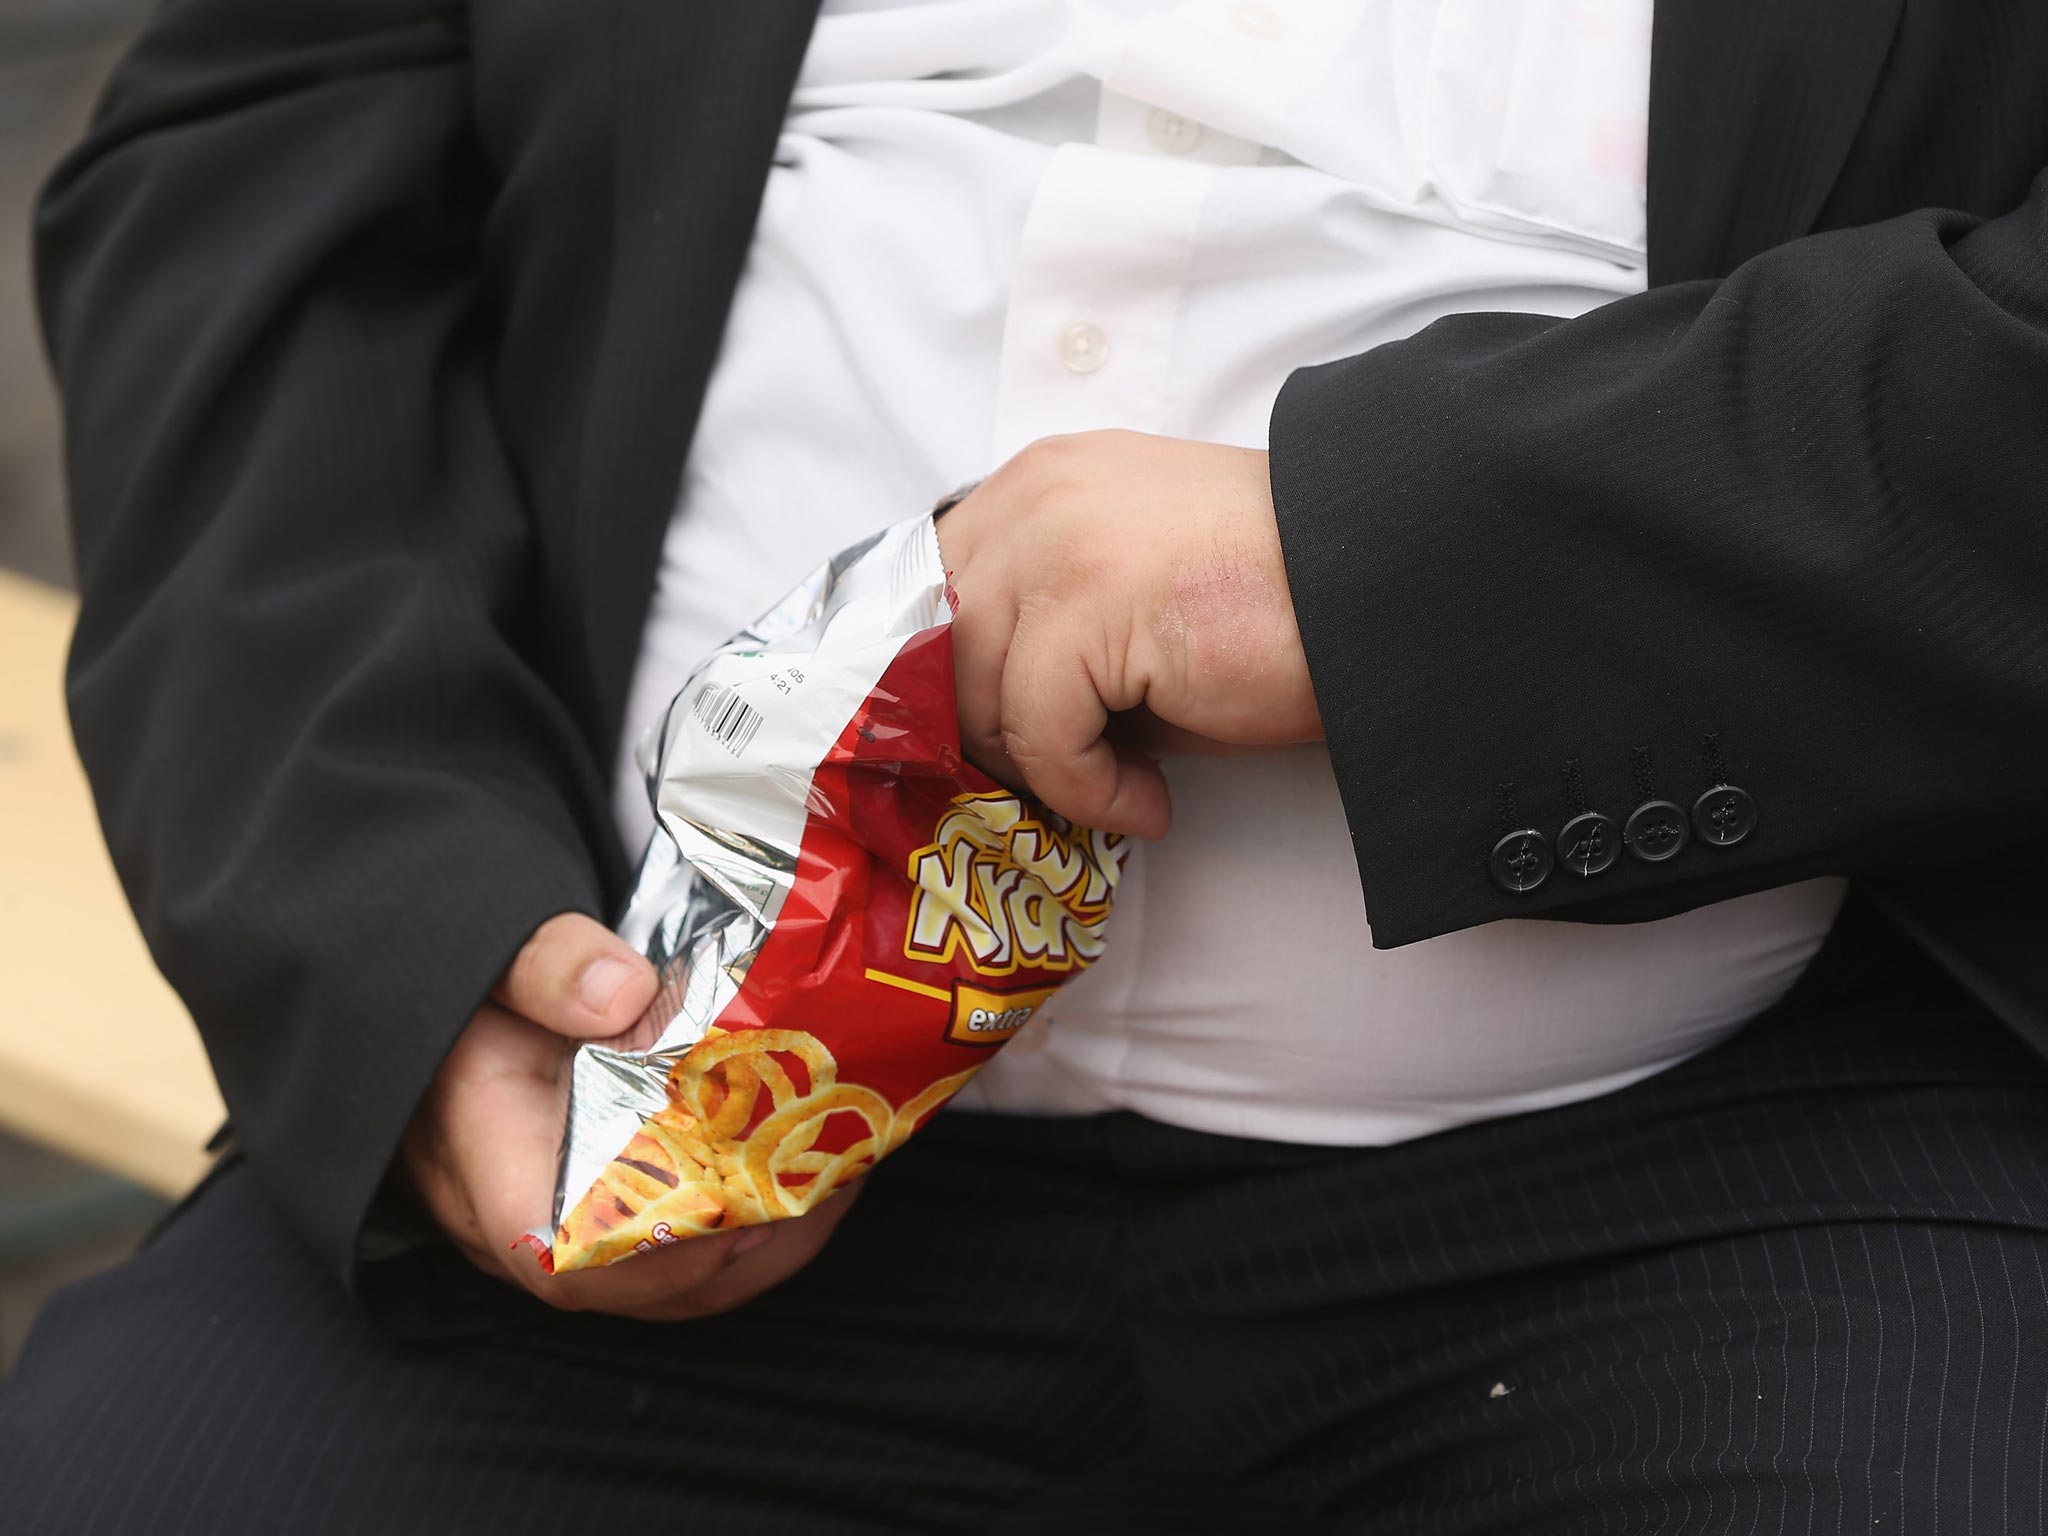 A man eats a packet of crisps